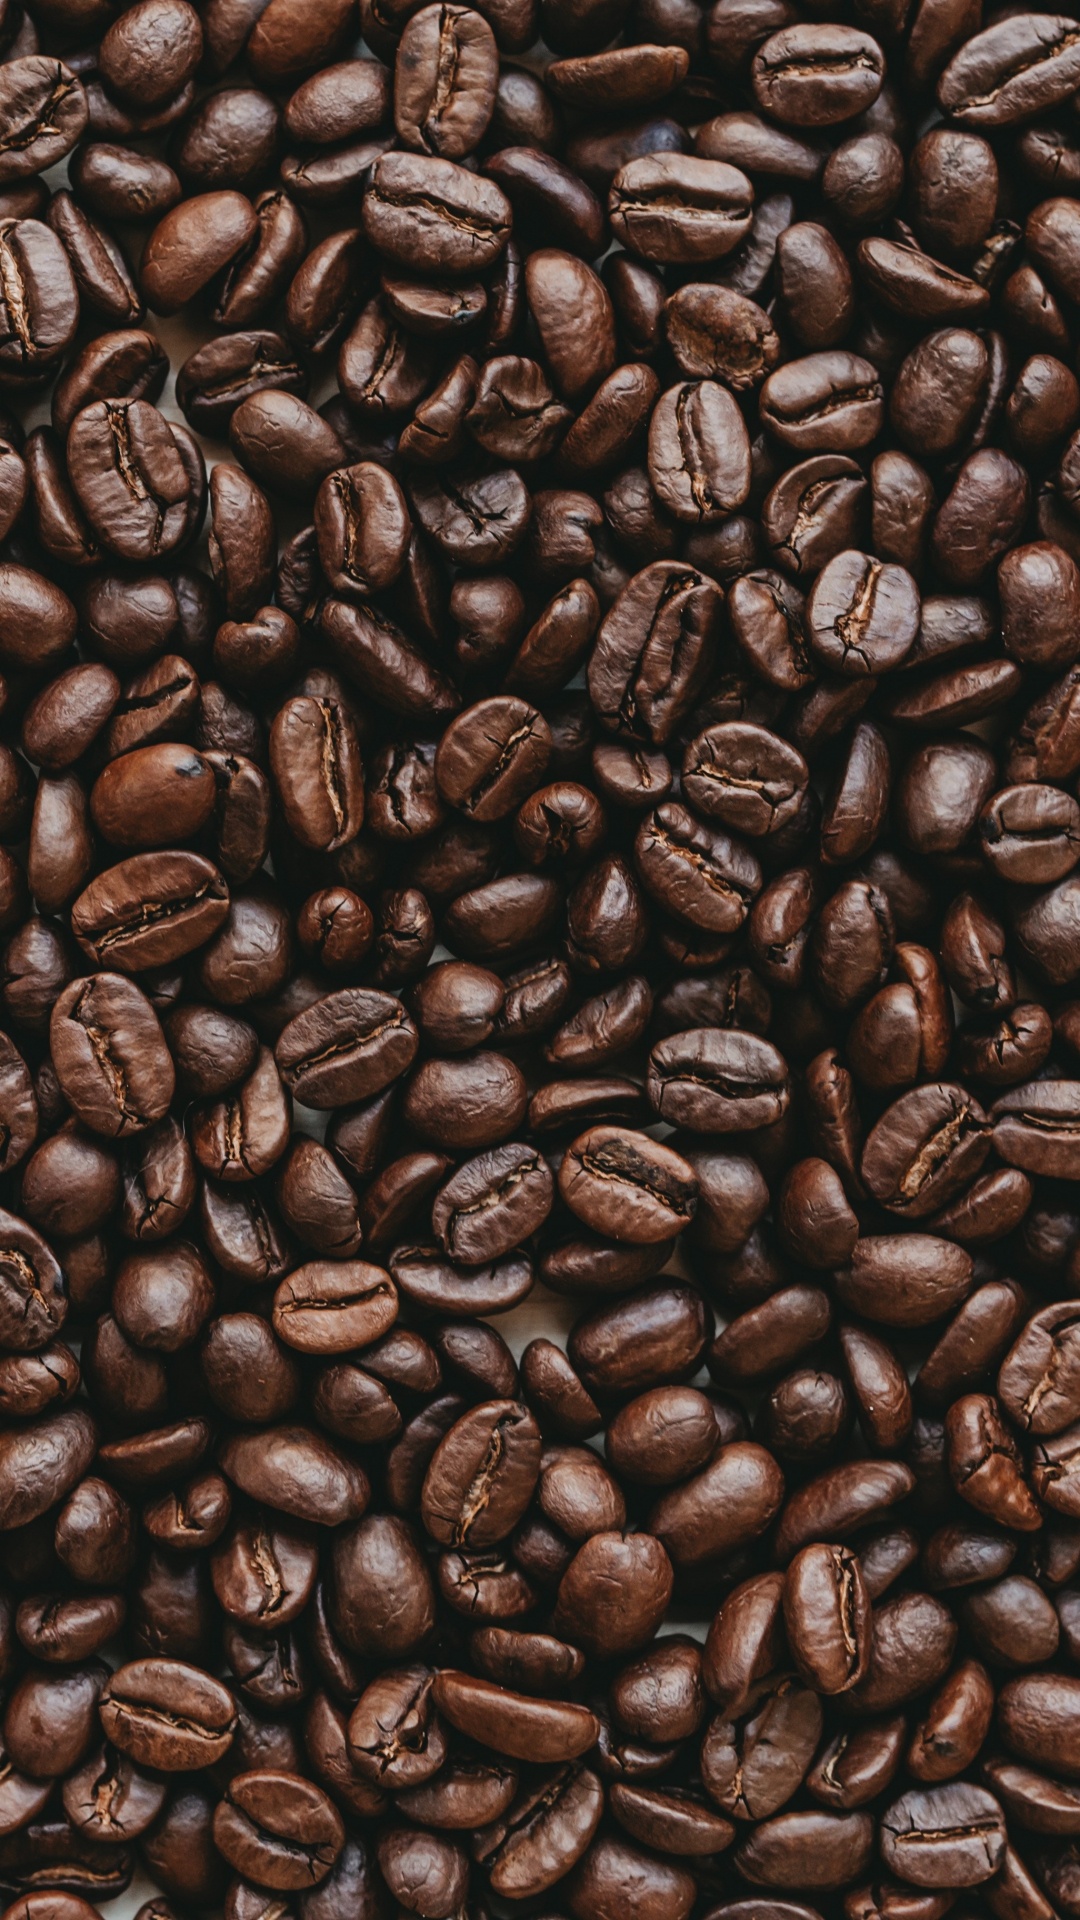 咖啡因, 棕色, 单一来源咖啡, 牙买加蓝山咖啡, Java咖啡 壁纸 1080x1920 允许